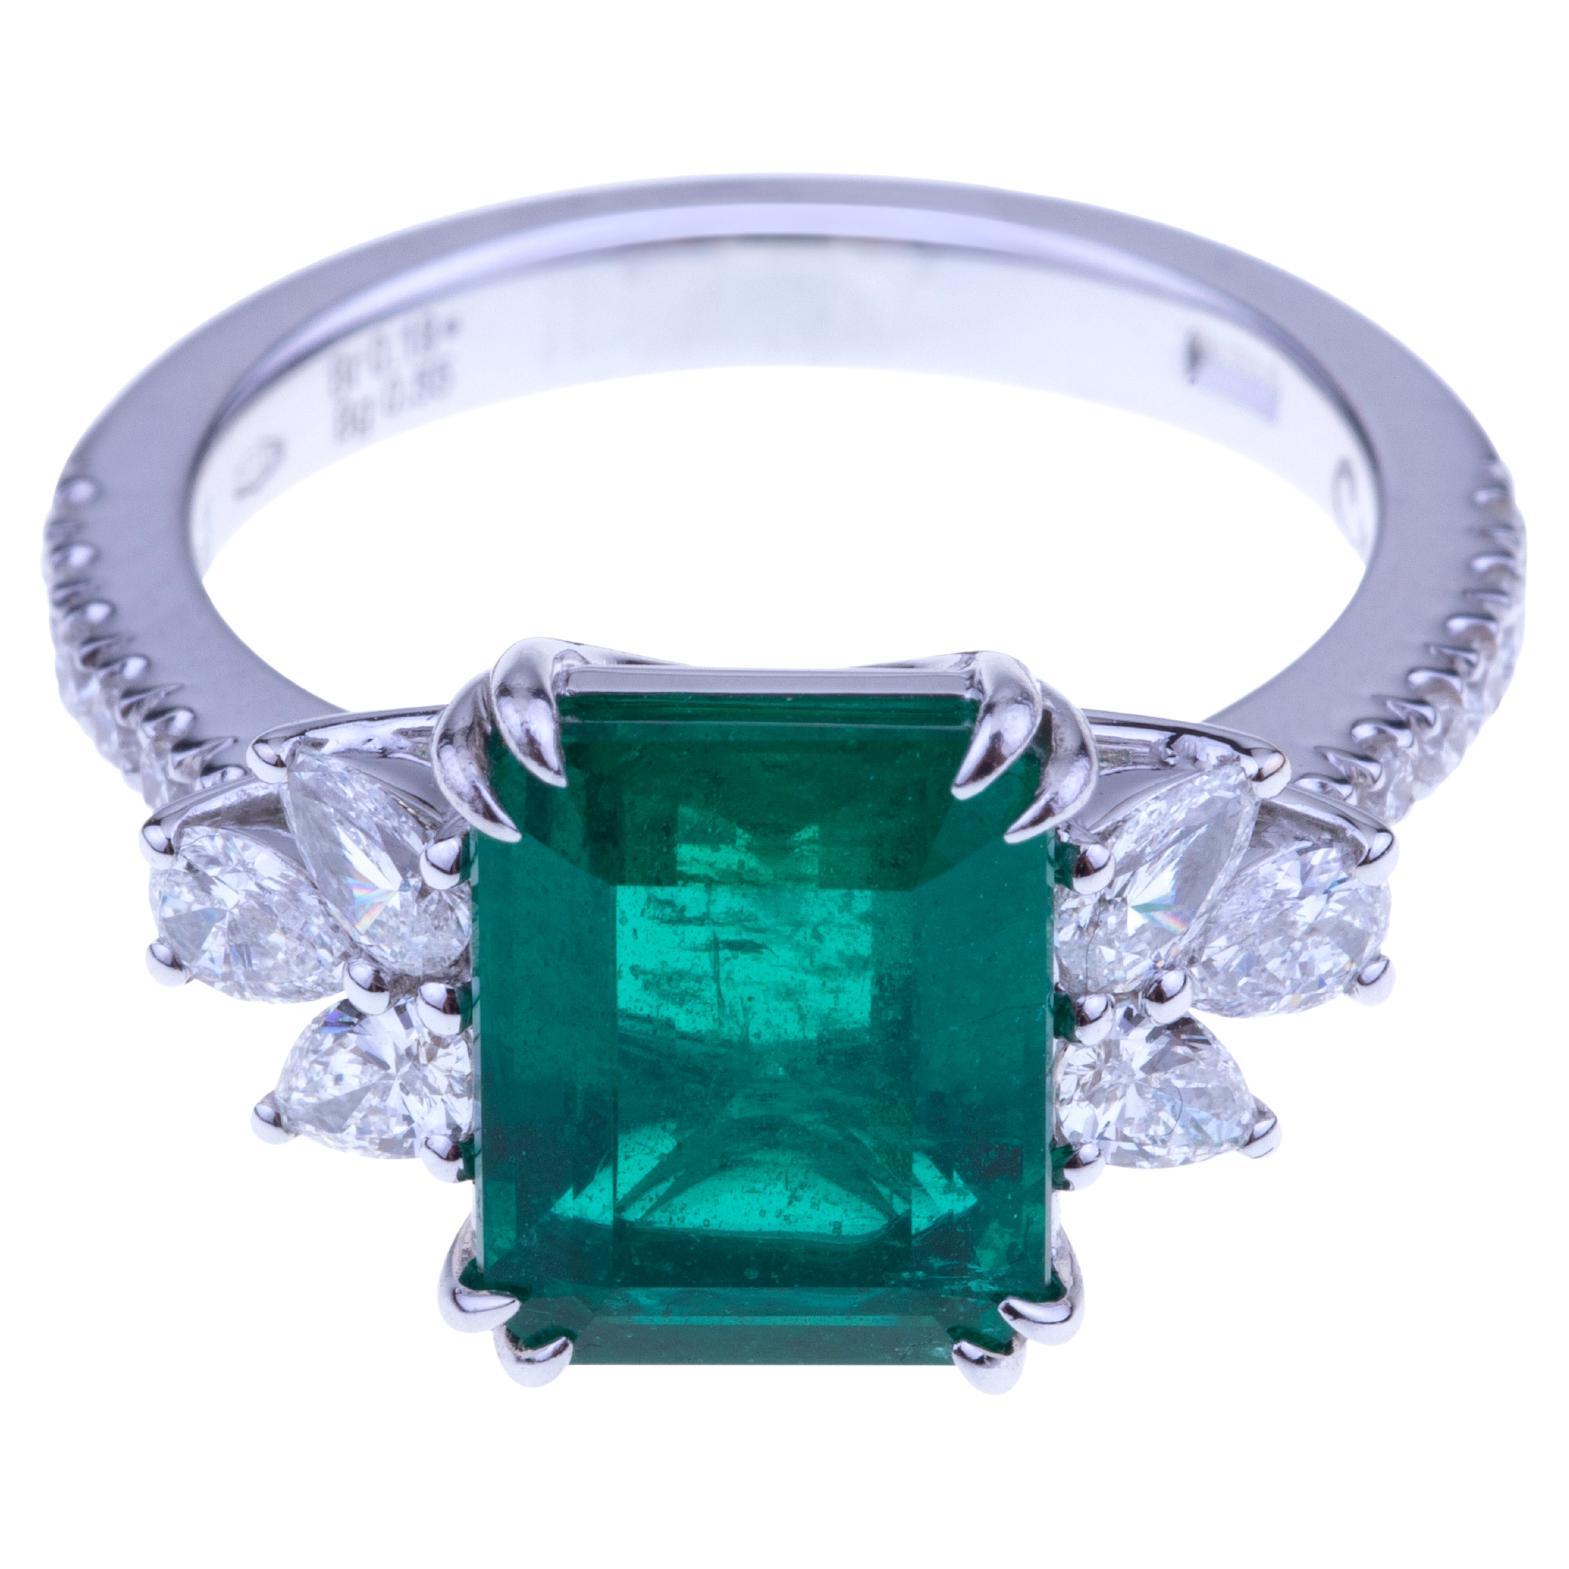 Atemberaubender Smaragdring ct. 3.20 mit Diamanten. Einzigartiger Stein mit Zertifikat.
Klassisches Design für diesen Ring mit einem atemberaubenden Smaragd (ct. 3,20 Zertifikat) Ursprung mit Diamanten auf der Seite (ct. 073 Runde).
Entworfen in